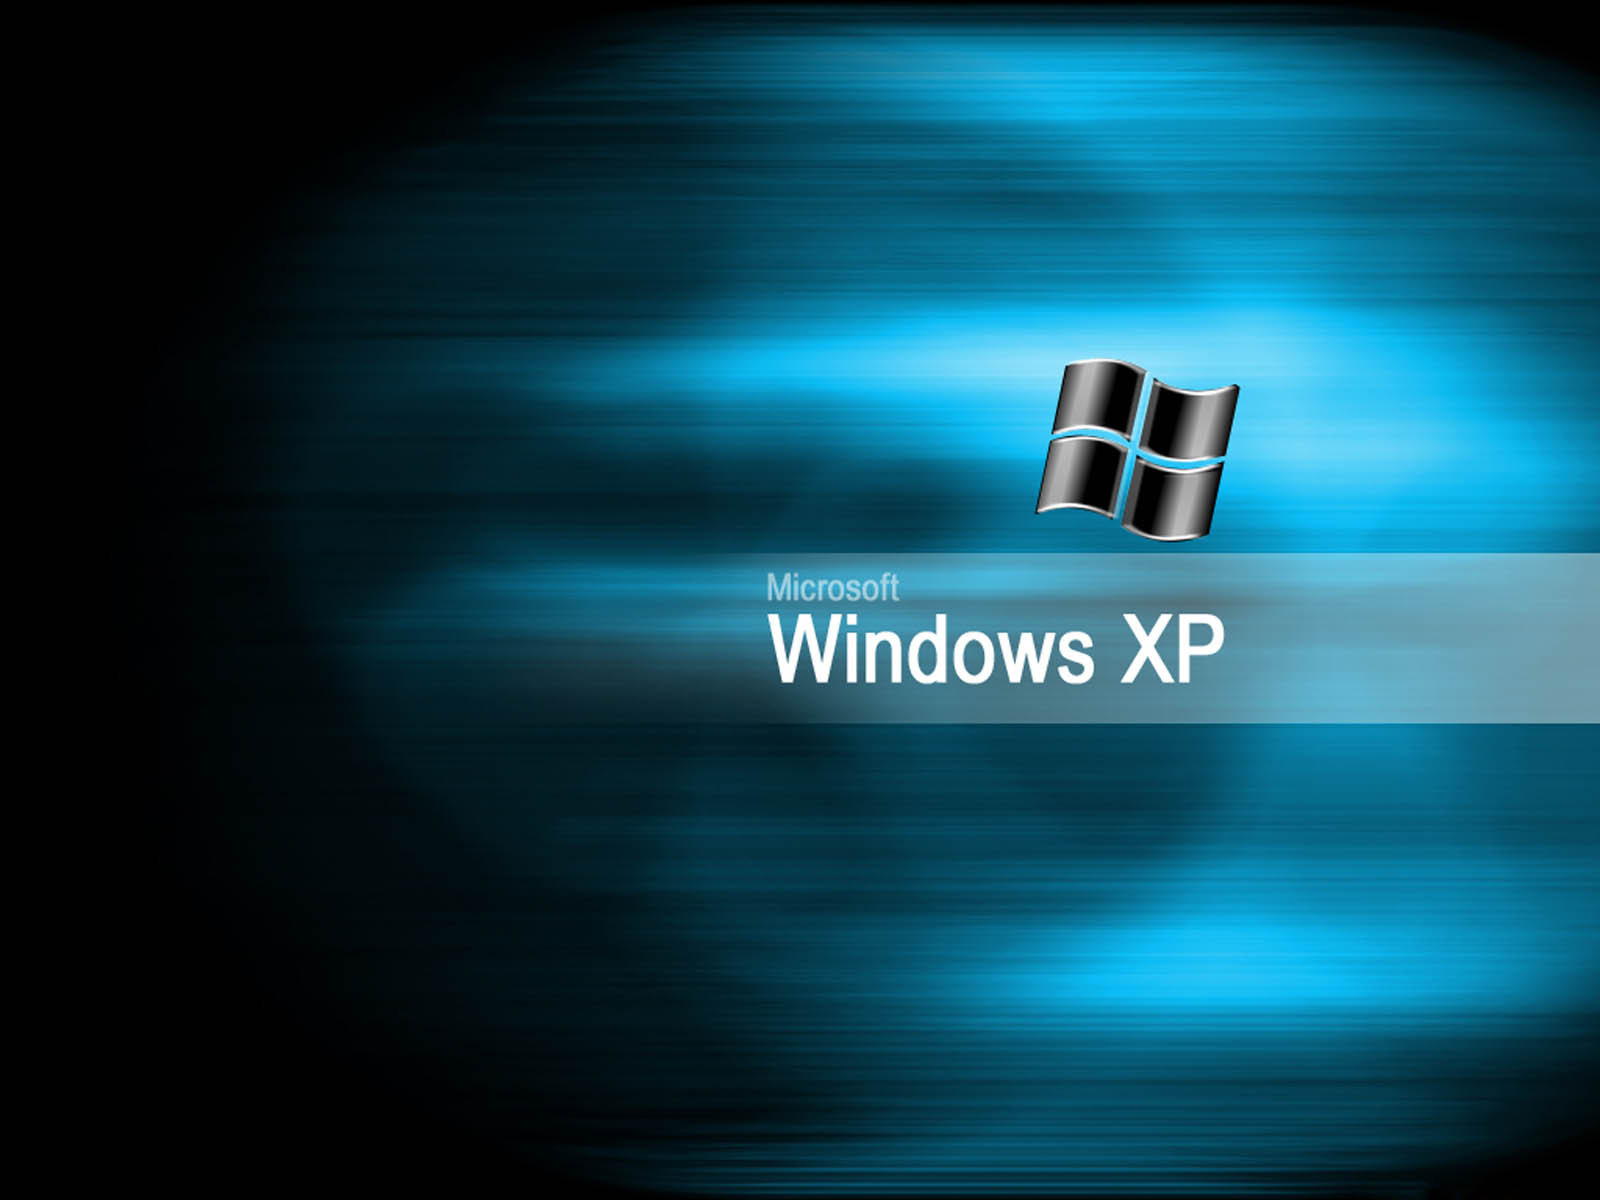 Vị Trí Hình Nền Desktop Windows XP: Bạn không biết cách thay đổi vị trí hình nền trên desktop Windows XP? Hãy theo dõi hình ảnh để học cách đơn giản và nhanh chóng để thay đổi vị trí hình nền theo ý thích của mình. Thật dễ dàng và tiện lợi để tạo ra một không gian làm việc thú vị trên máy tính của bạn.